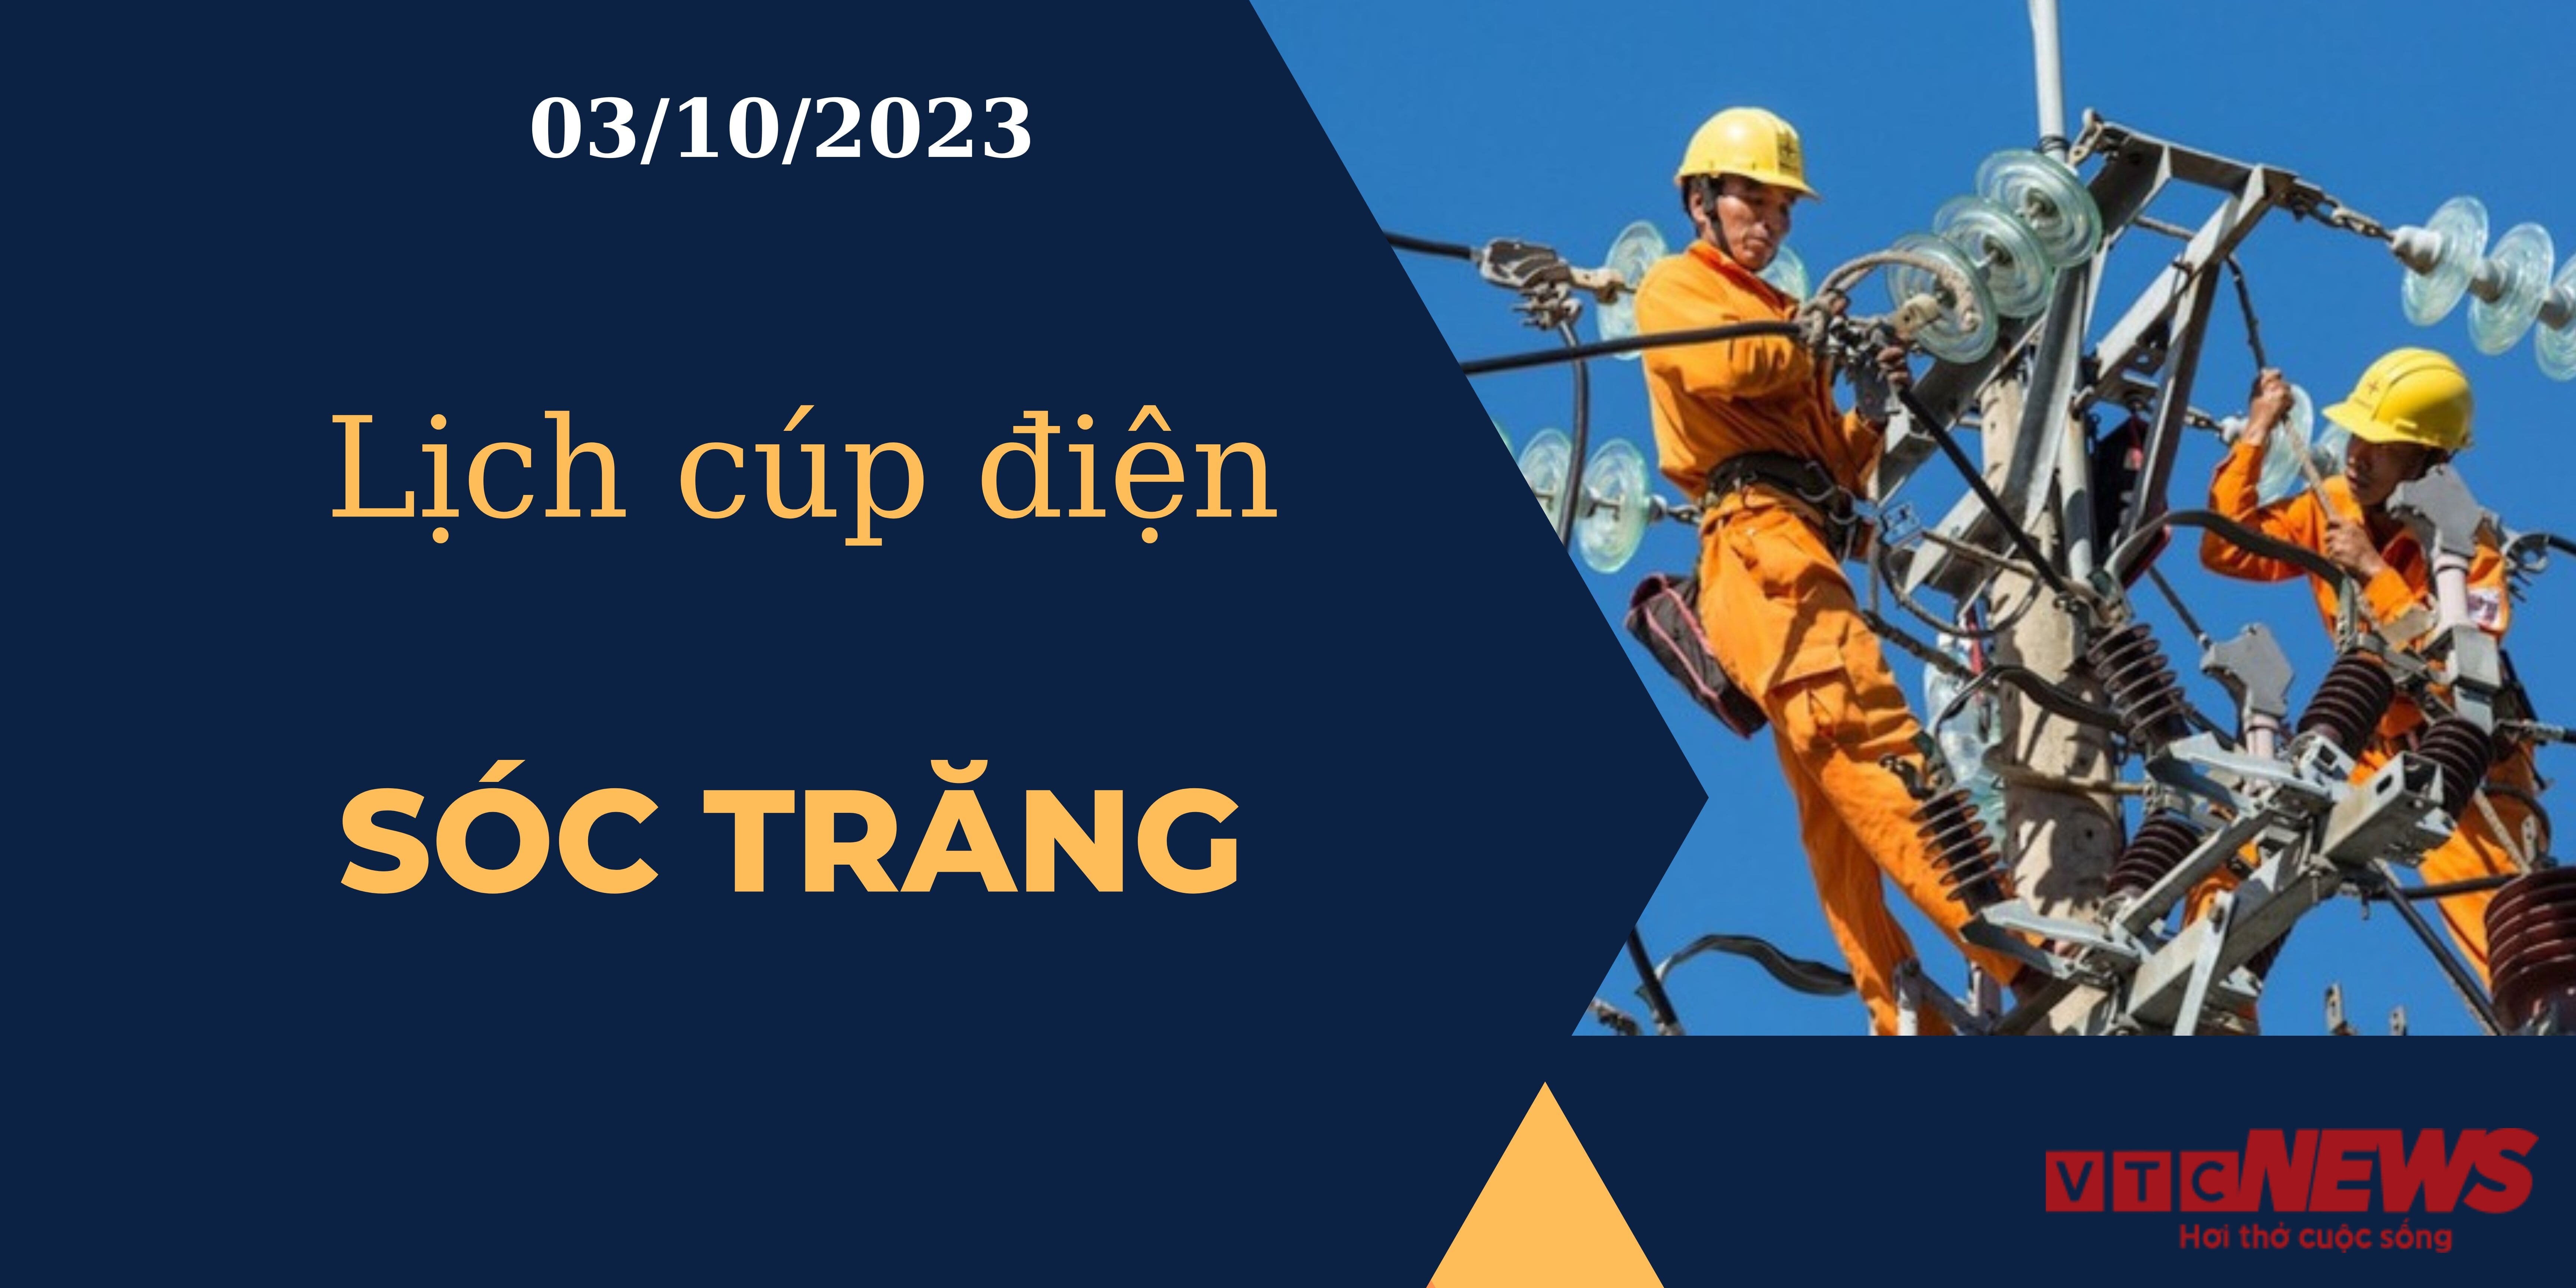 Lịch cúp điện Sóc Trăng ngày 03/10/2023